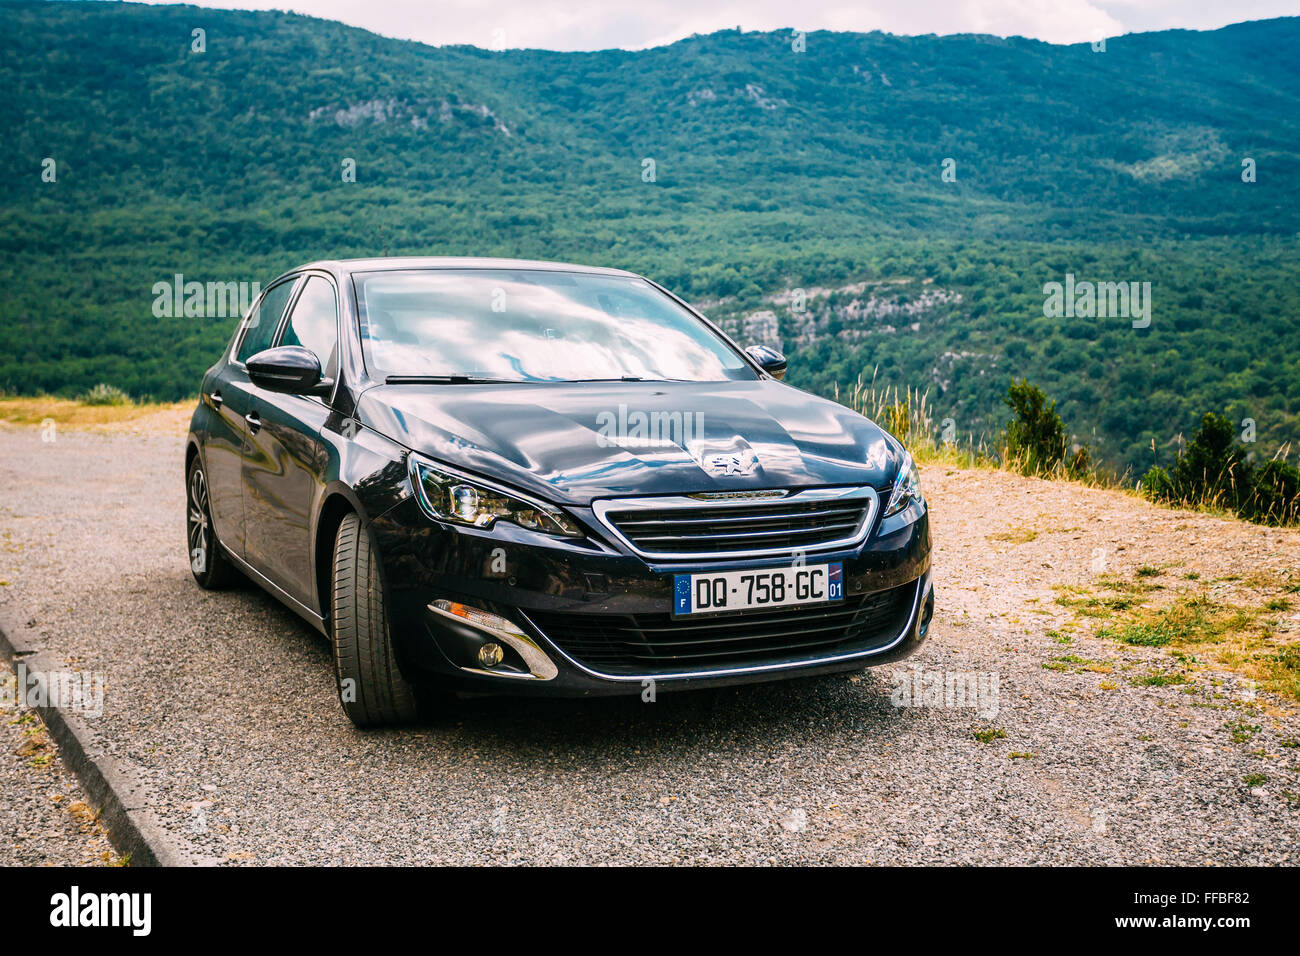 Verdon, France - le 29 juin 2015 : Noir Couleur Peugeot 308 5 portes voiture sur fond de montagne nature paysage. La Peuge Banque D'Images